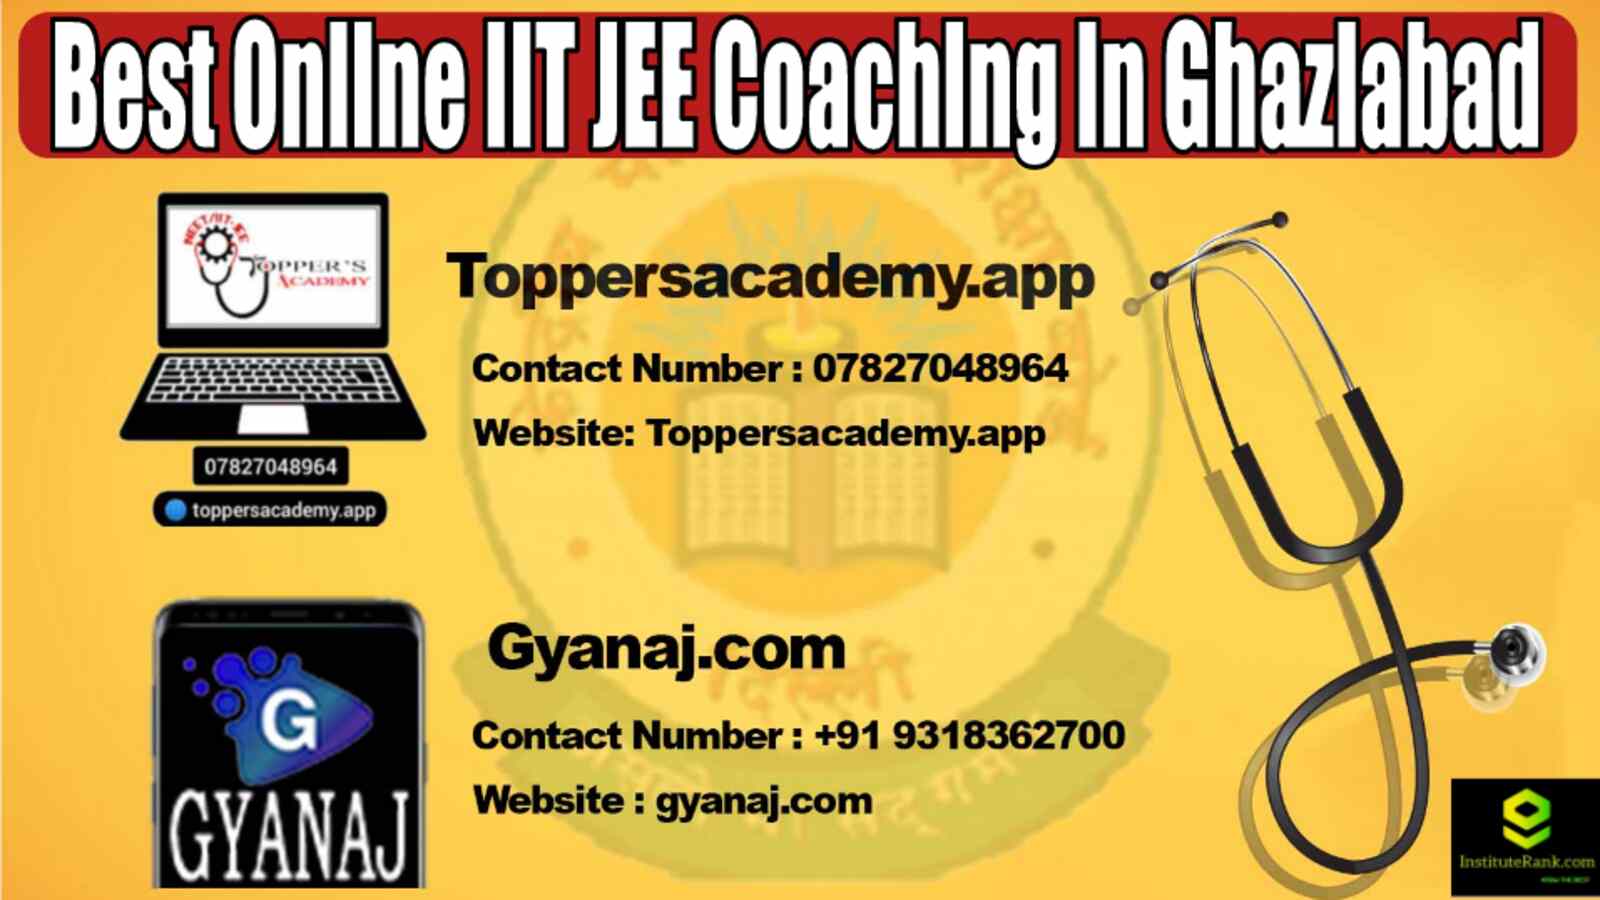 Best Online IIT JEE Coaching in Ghaziabad 2022